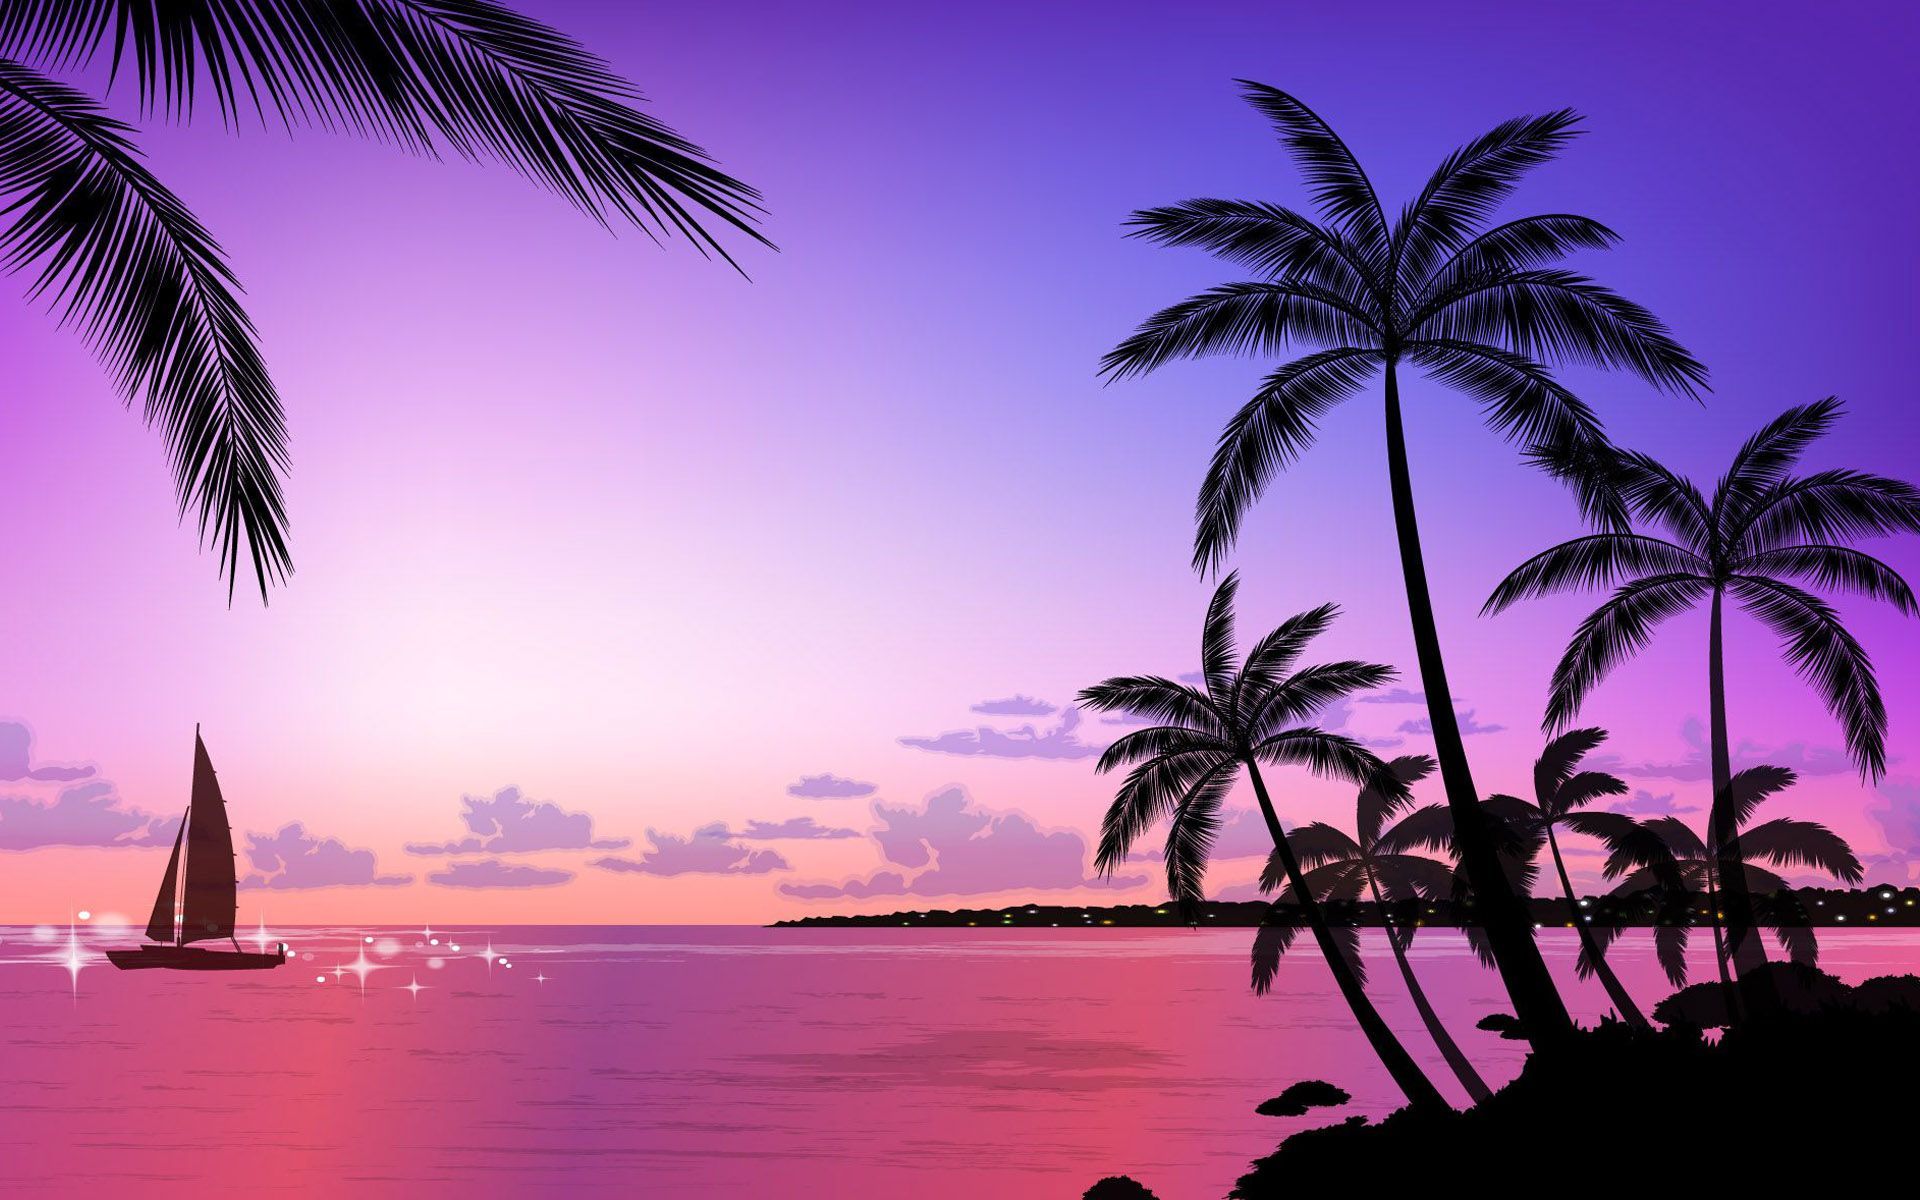 Pink Beach Sunset. Sunset iphone wallpaper, Beach sunset wallpaper, Sunset wallpaper